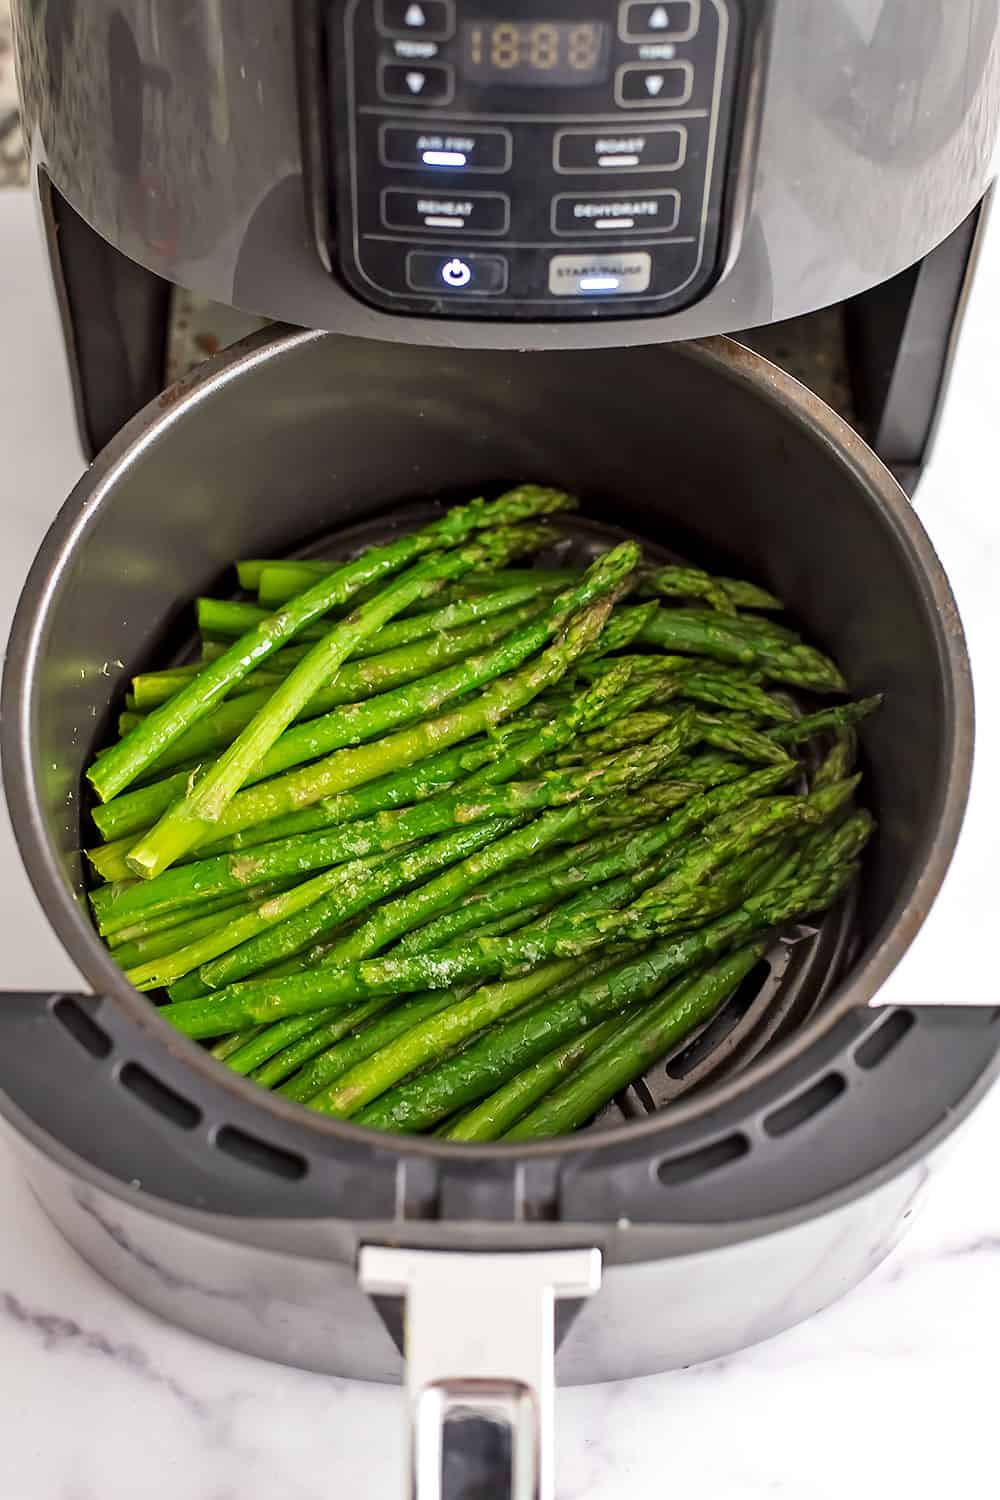 Frozen asparagus in air fryer half way through cooking.